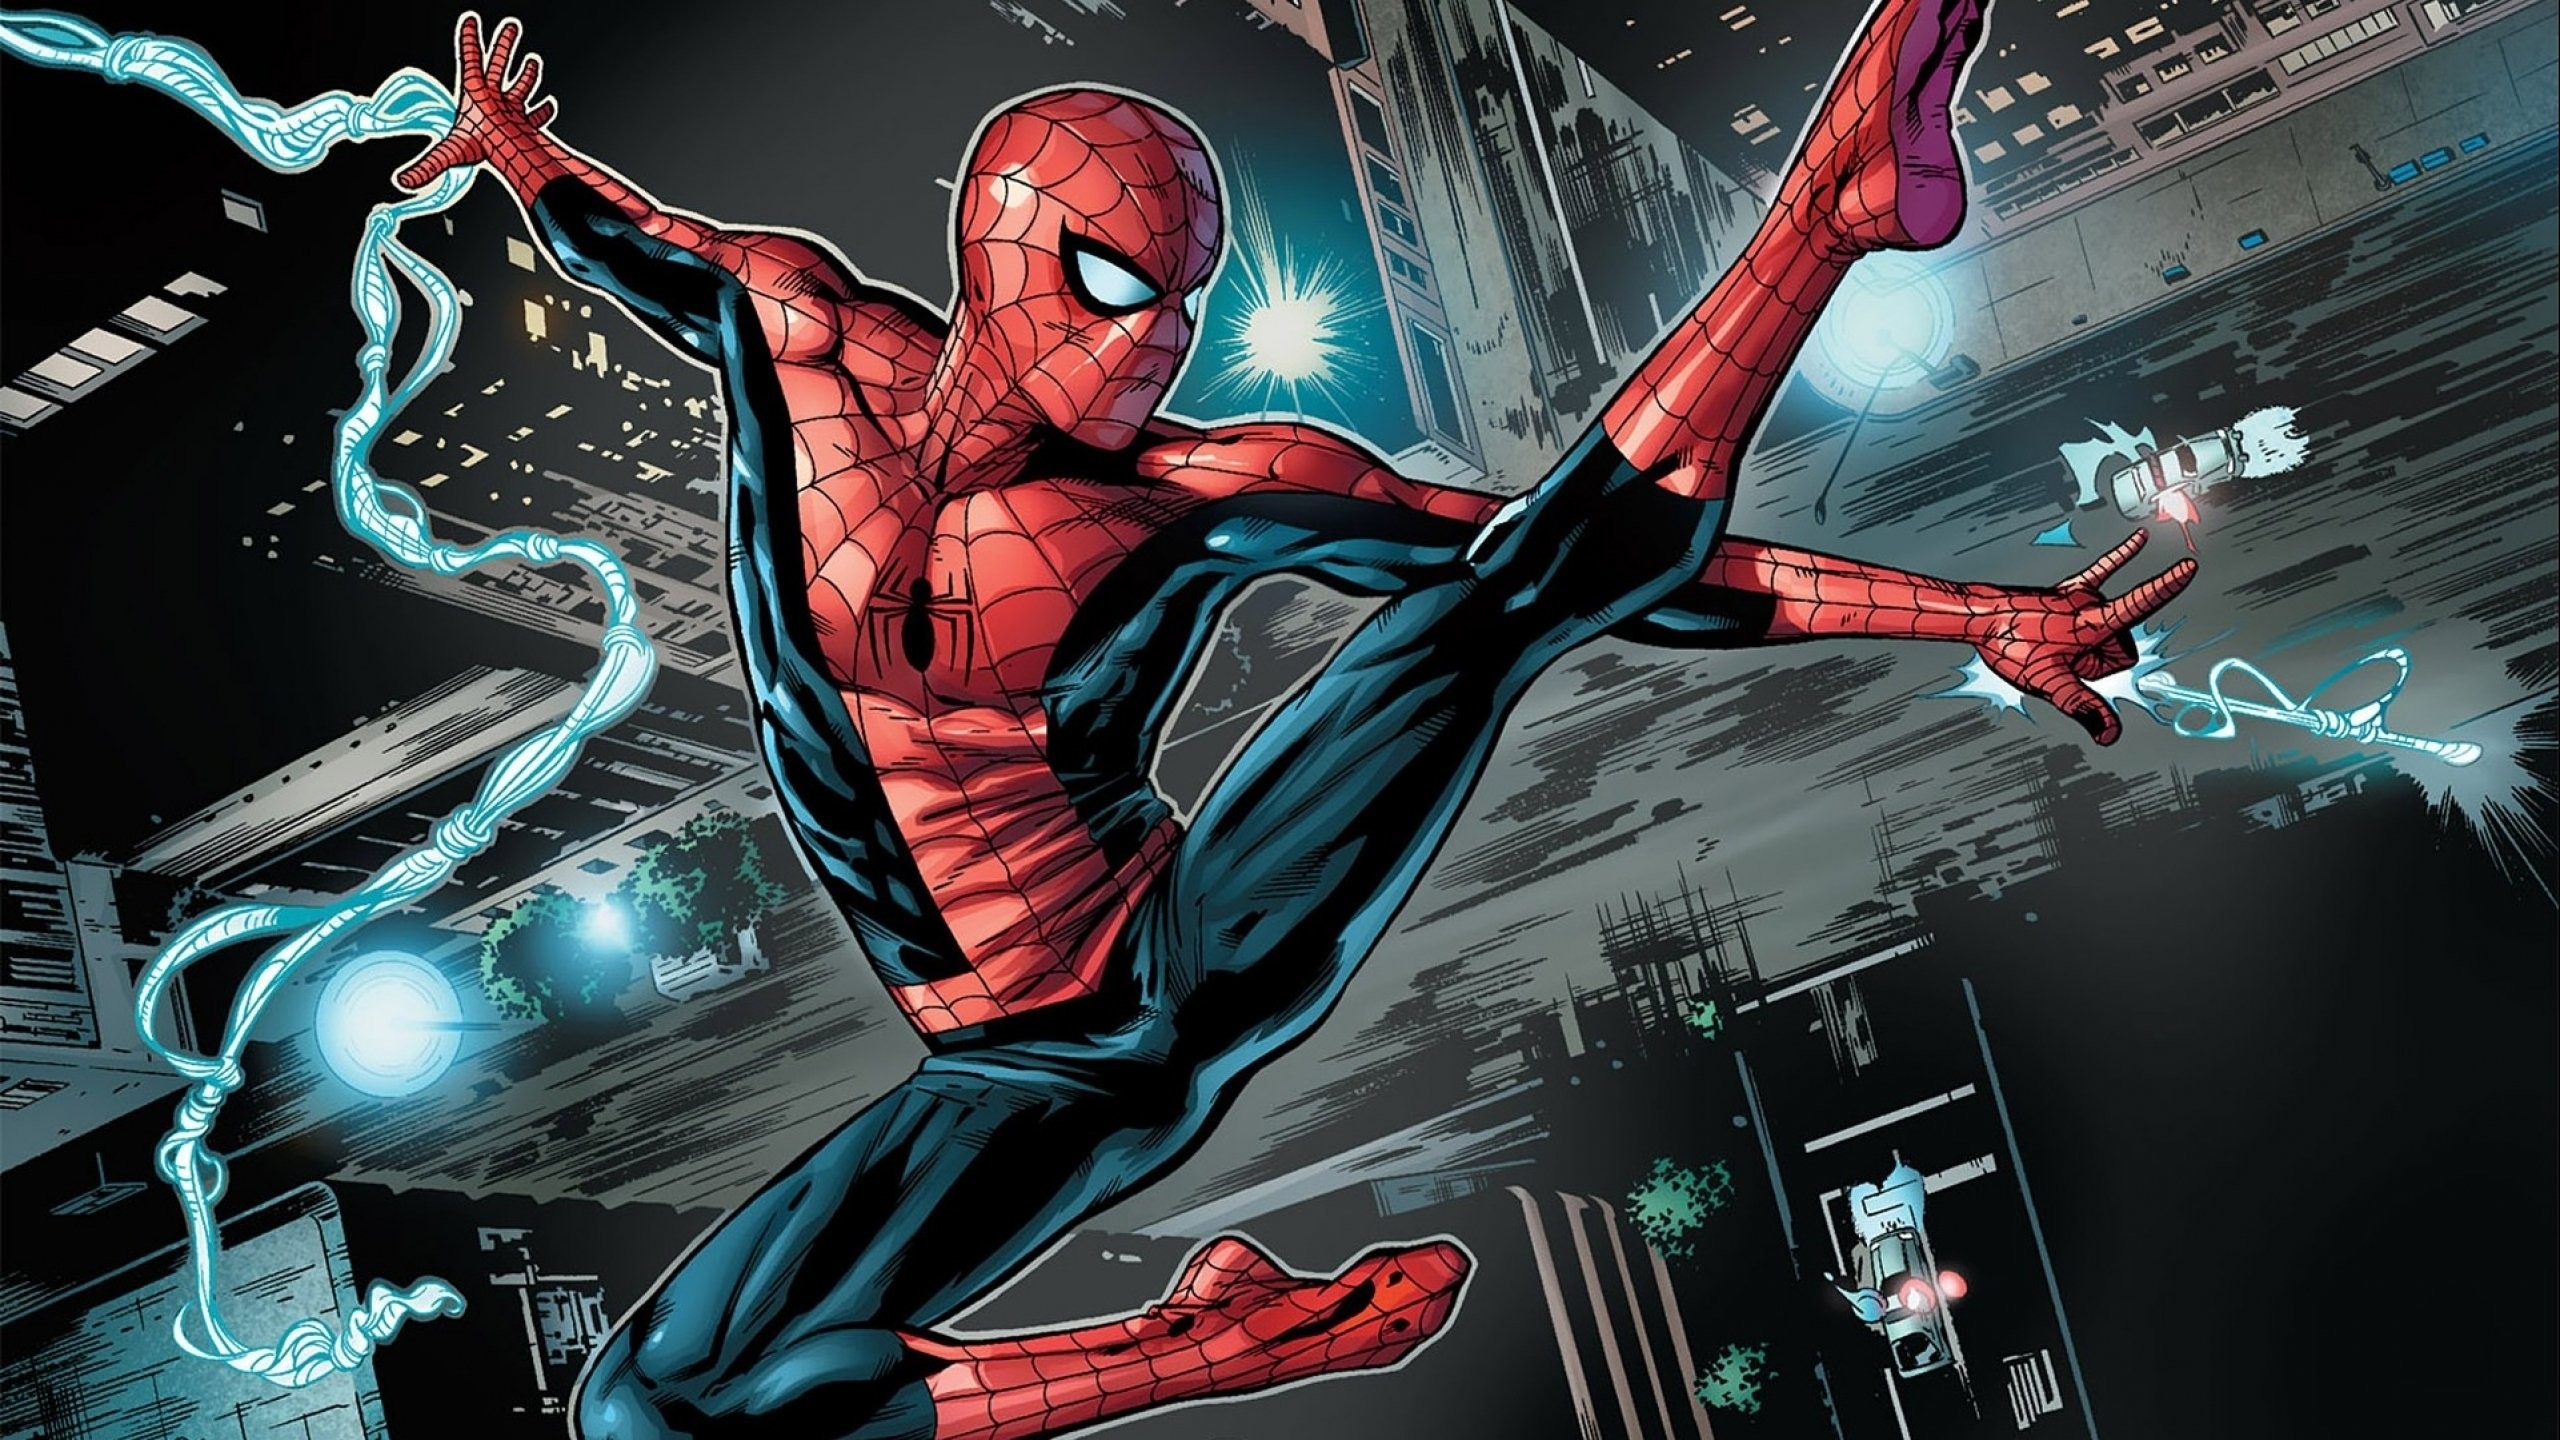 fond d'écran spiderman hd,personnage fictif,super héros,jeu d'aventure d'action,illustration,fiction